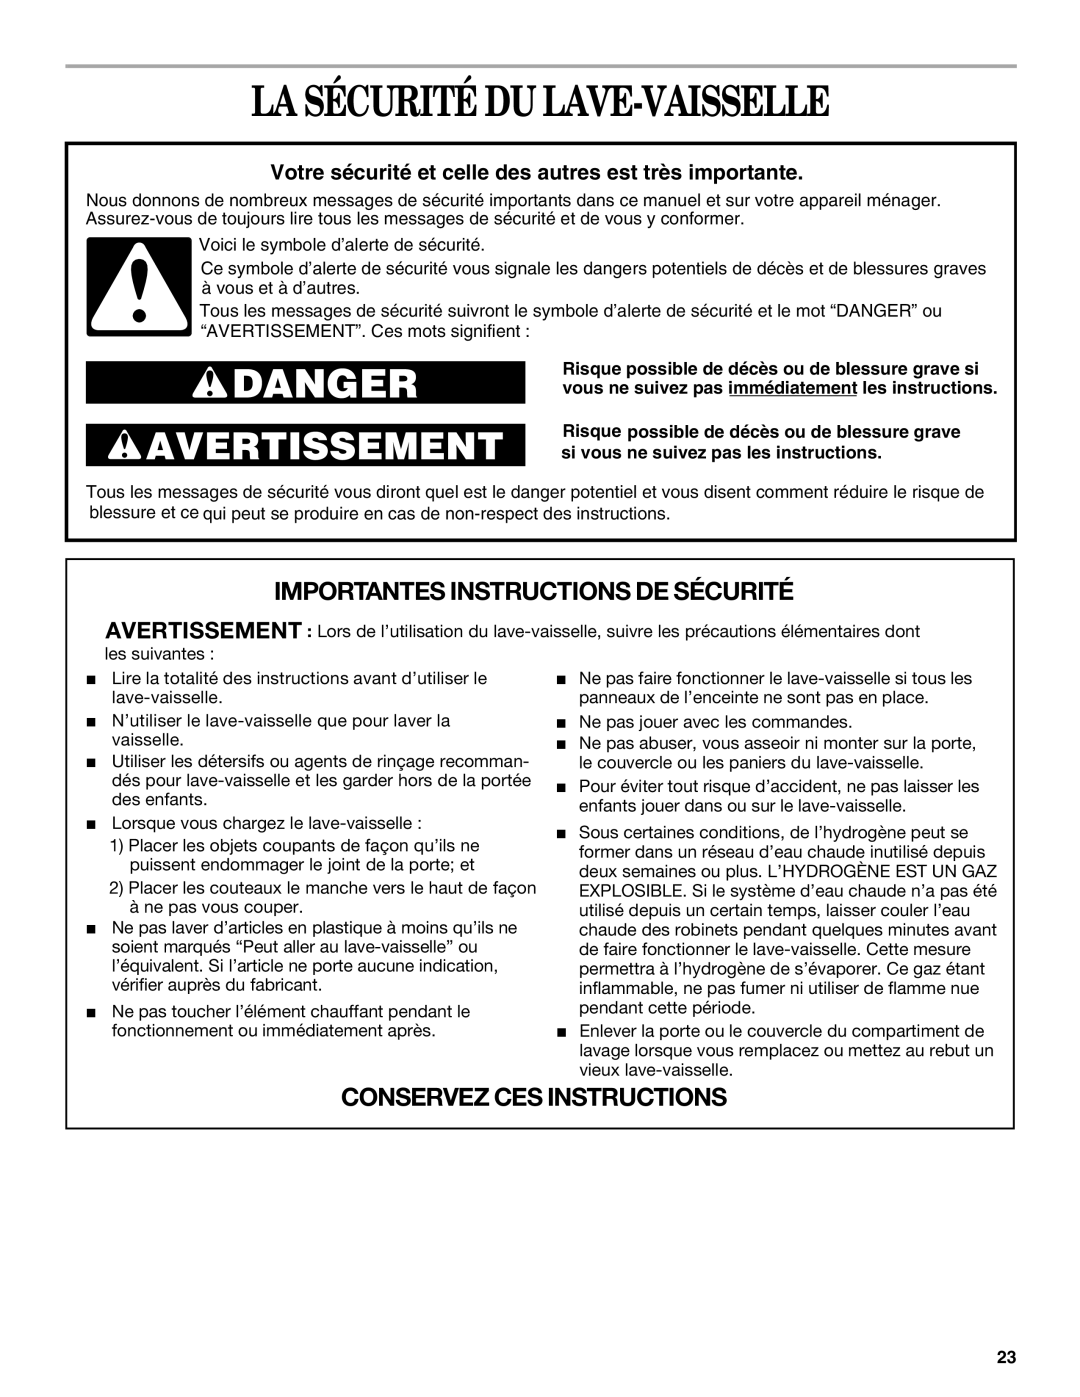 Whirlpool 941, 945 La Sécurité Du Lave-Vaisselle, Importantes Instructions De Sécurité, Conservez Ces Instructions, Danger 